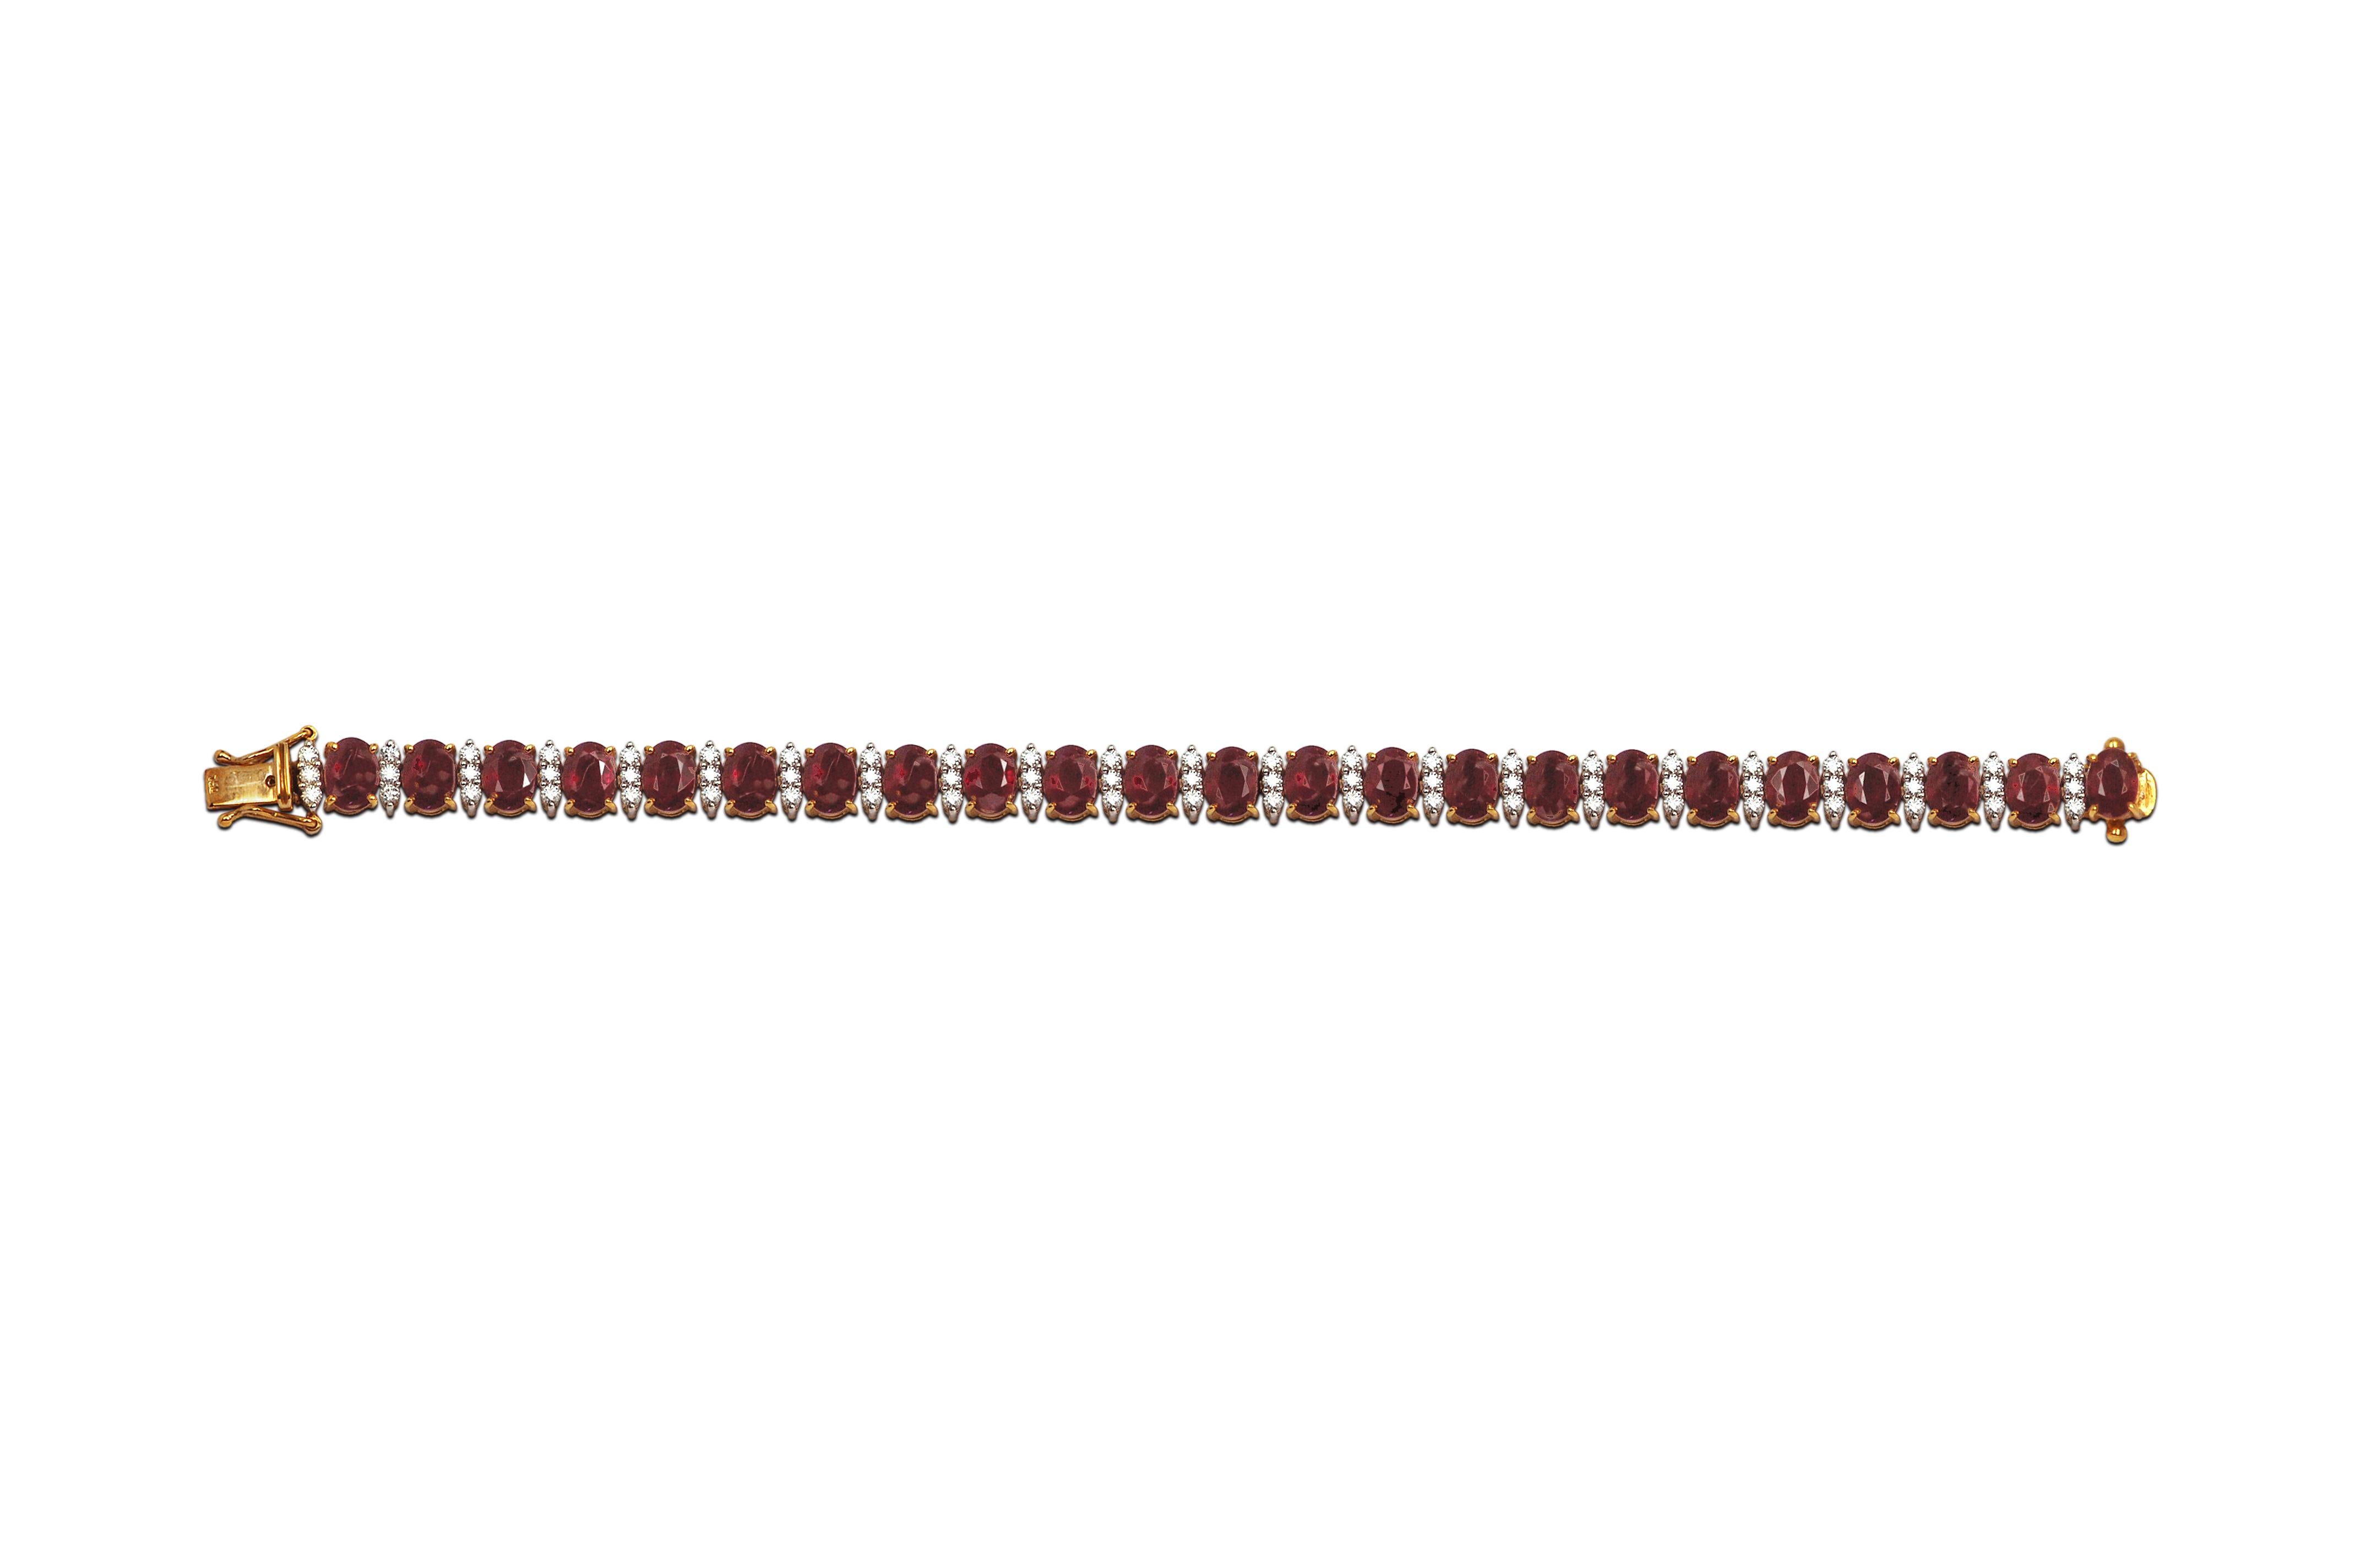 Bracelet de rubis 22,06 carats et de diamants 1,75 carats serti dans des montures en or 18 carats

Largeur : 0,6 cm
Longueur : 18,5 cm 


